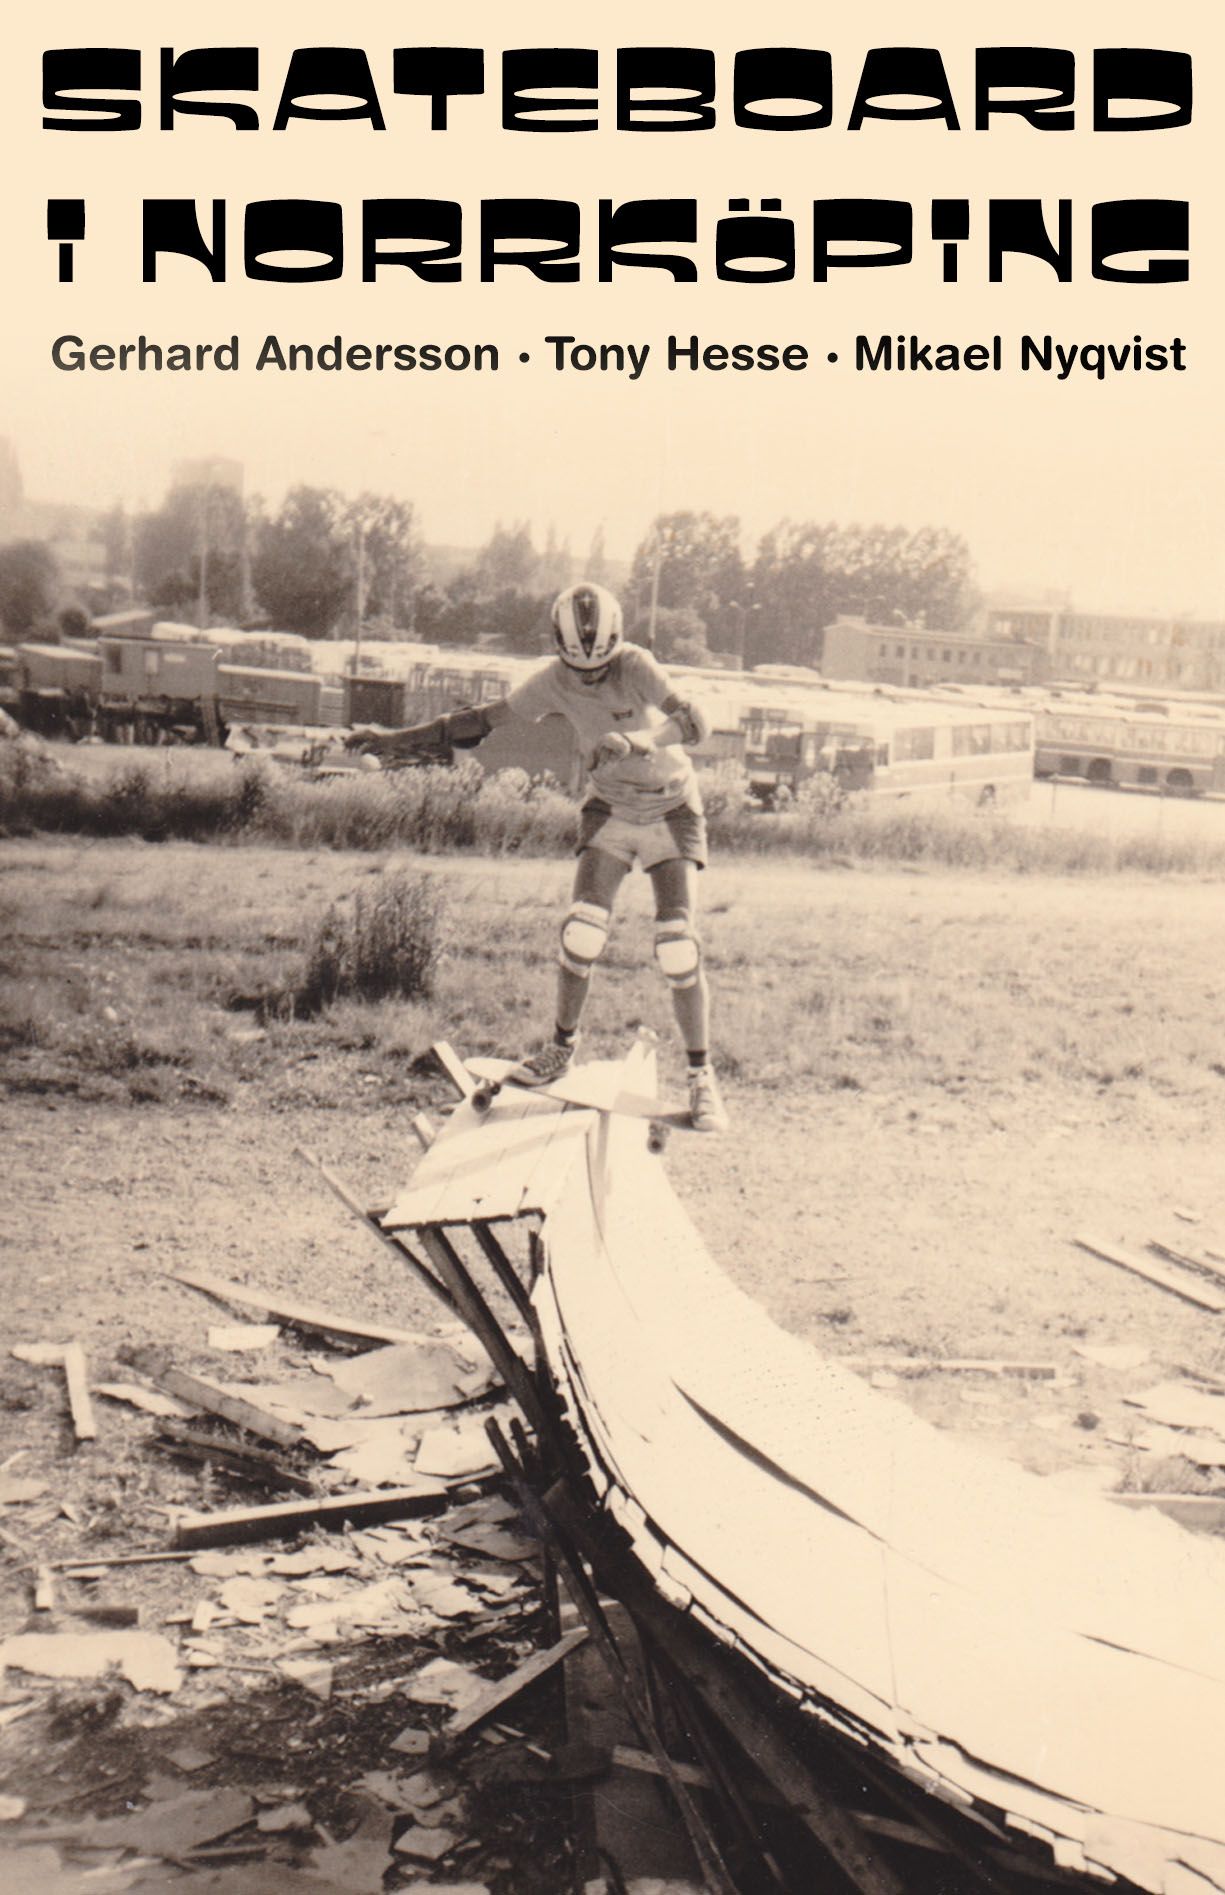 Skateboard i Norrköping, e-bok av Gerhard Andersson, Tony Hesse, Mikael Nyqvist